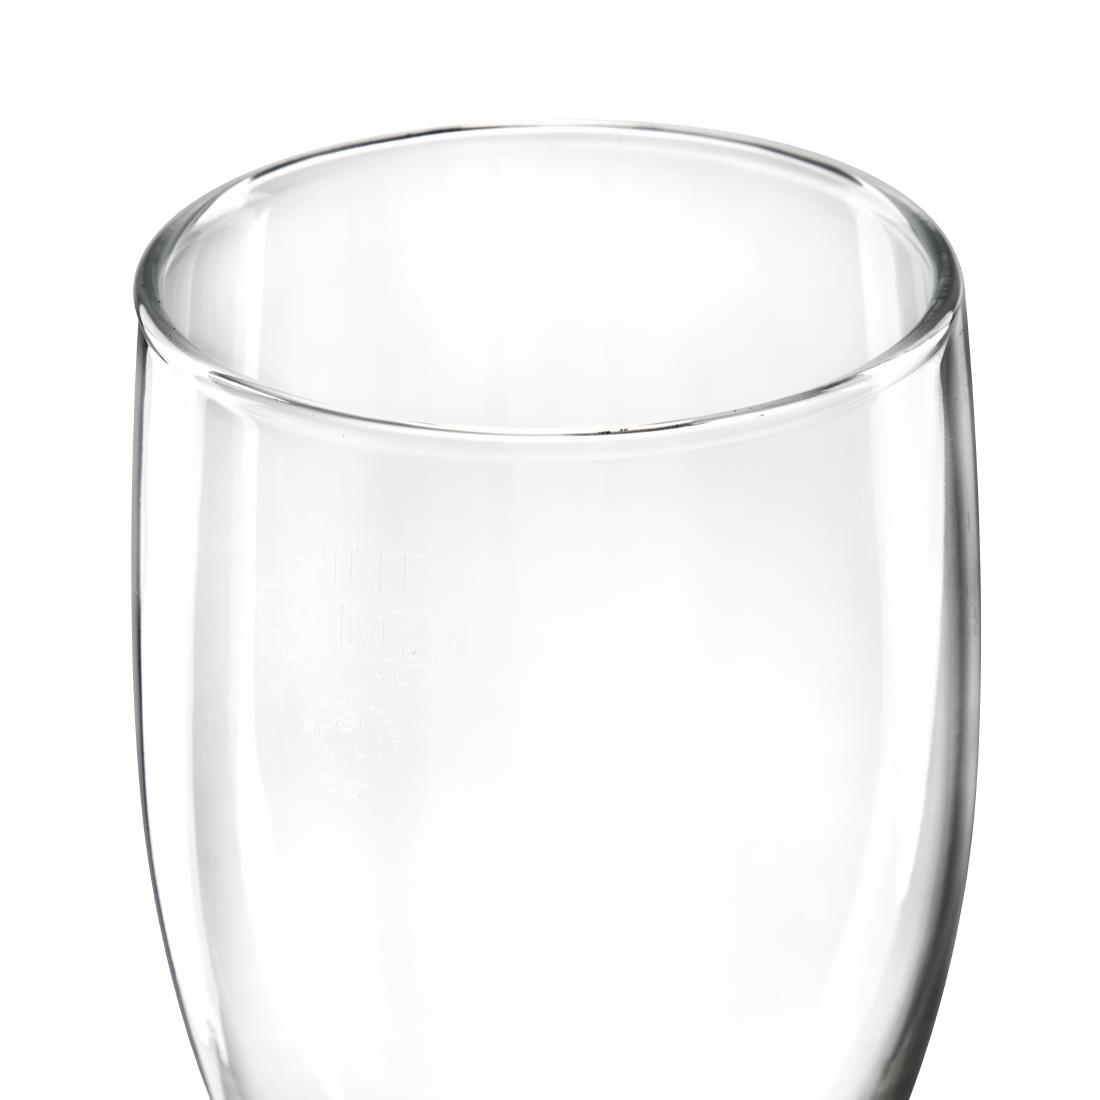 Arcoroc Tulp bierglazen 591ml CE-gemarkeerd (24 stuks)